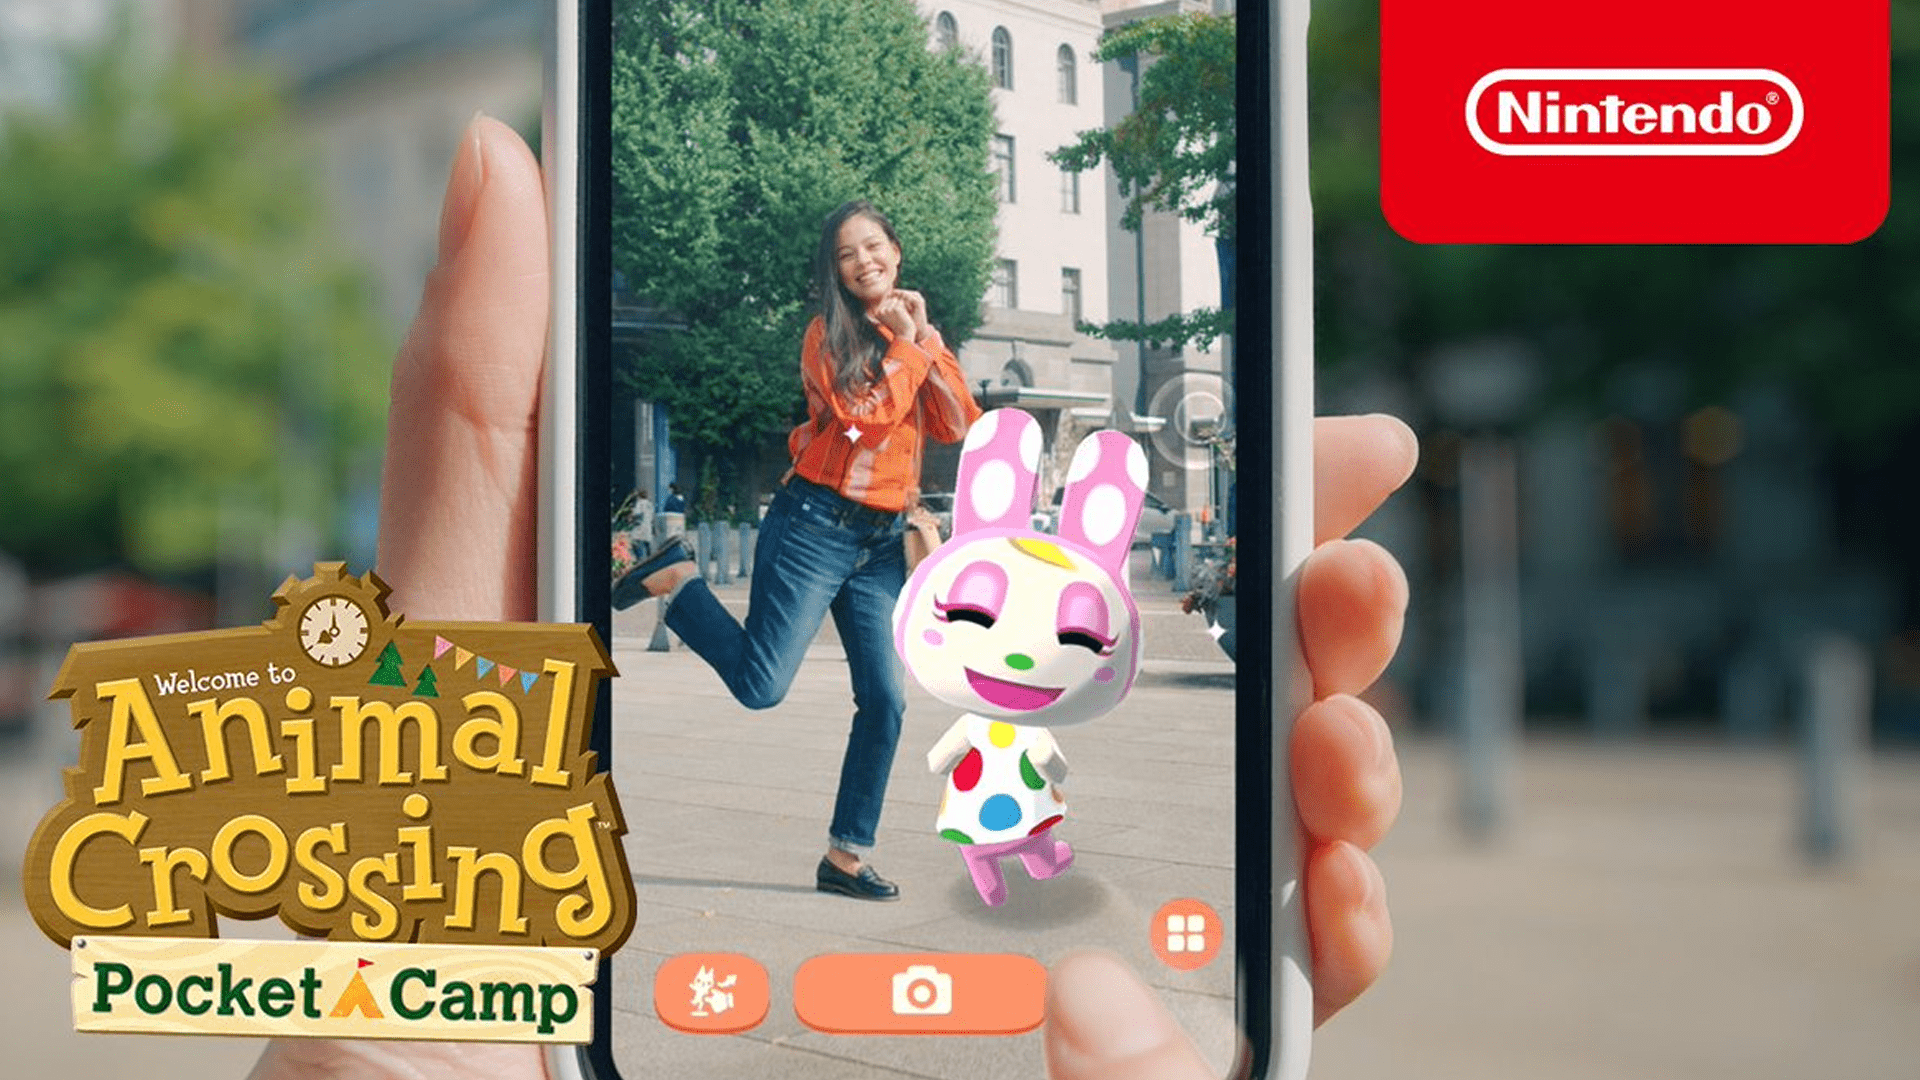 Mode AR baru menghadirkan karakter ‘Animal Crossing: Pocket Camp’ ke dunia nyata